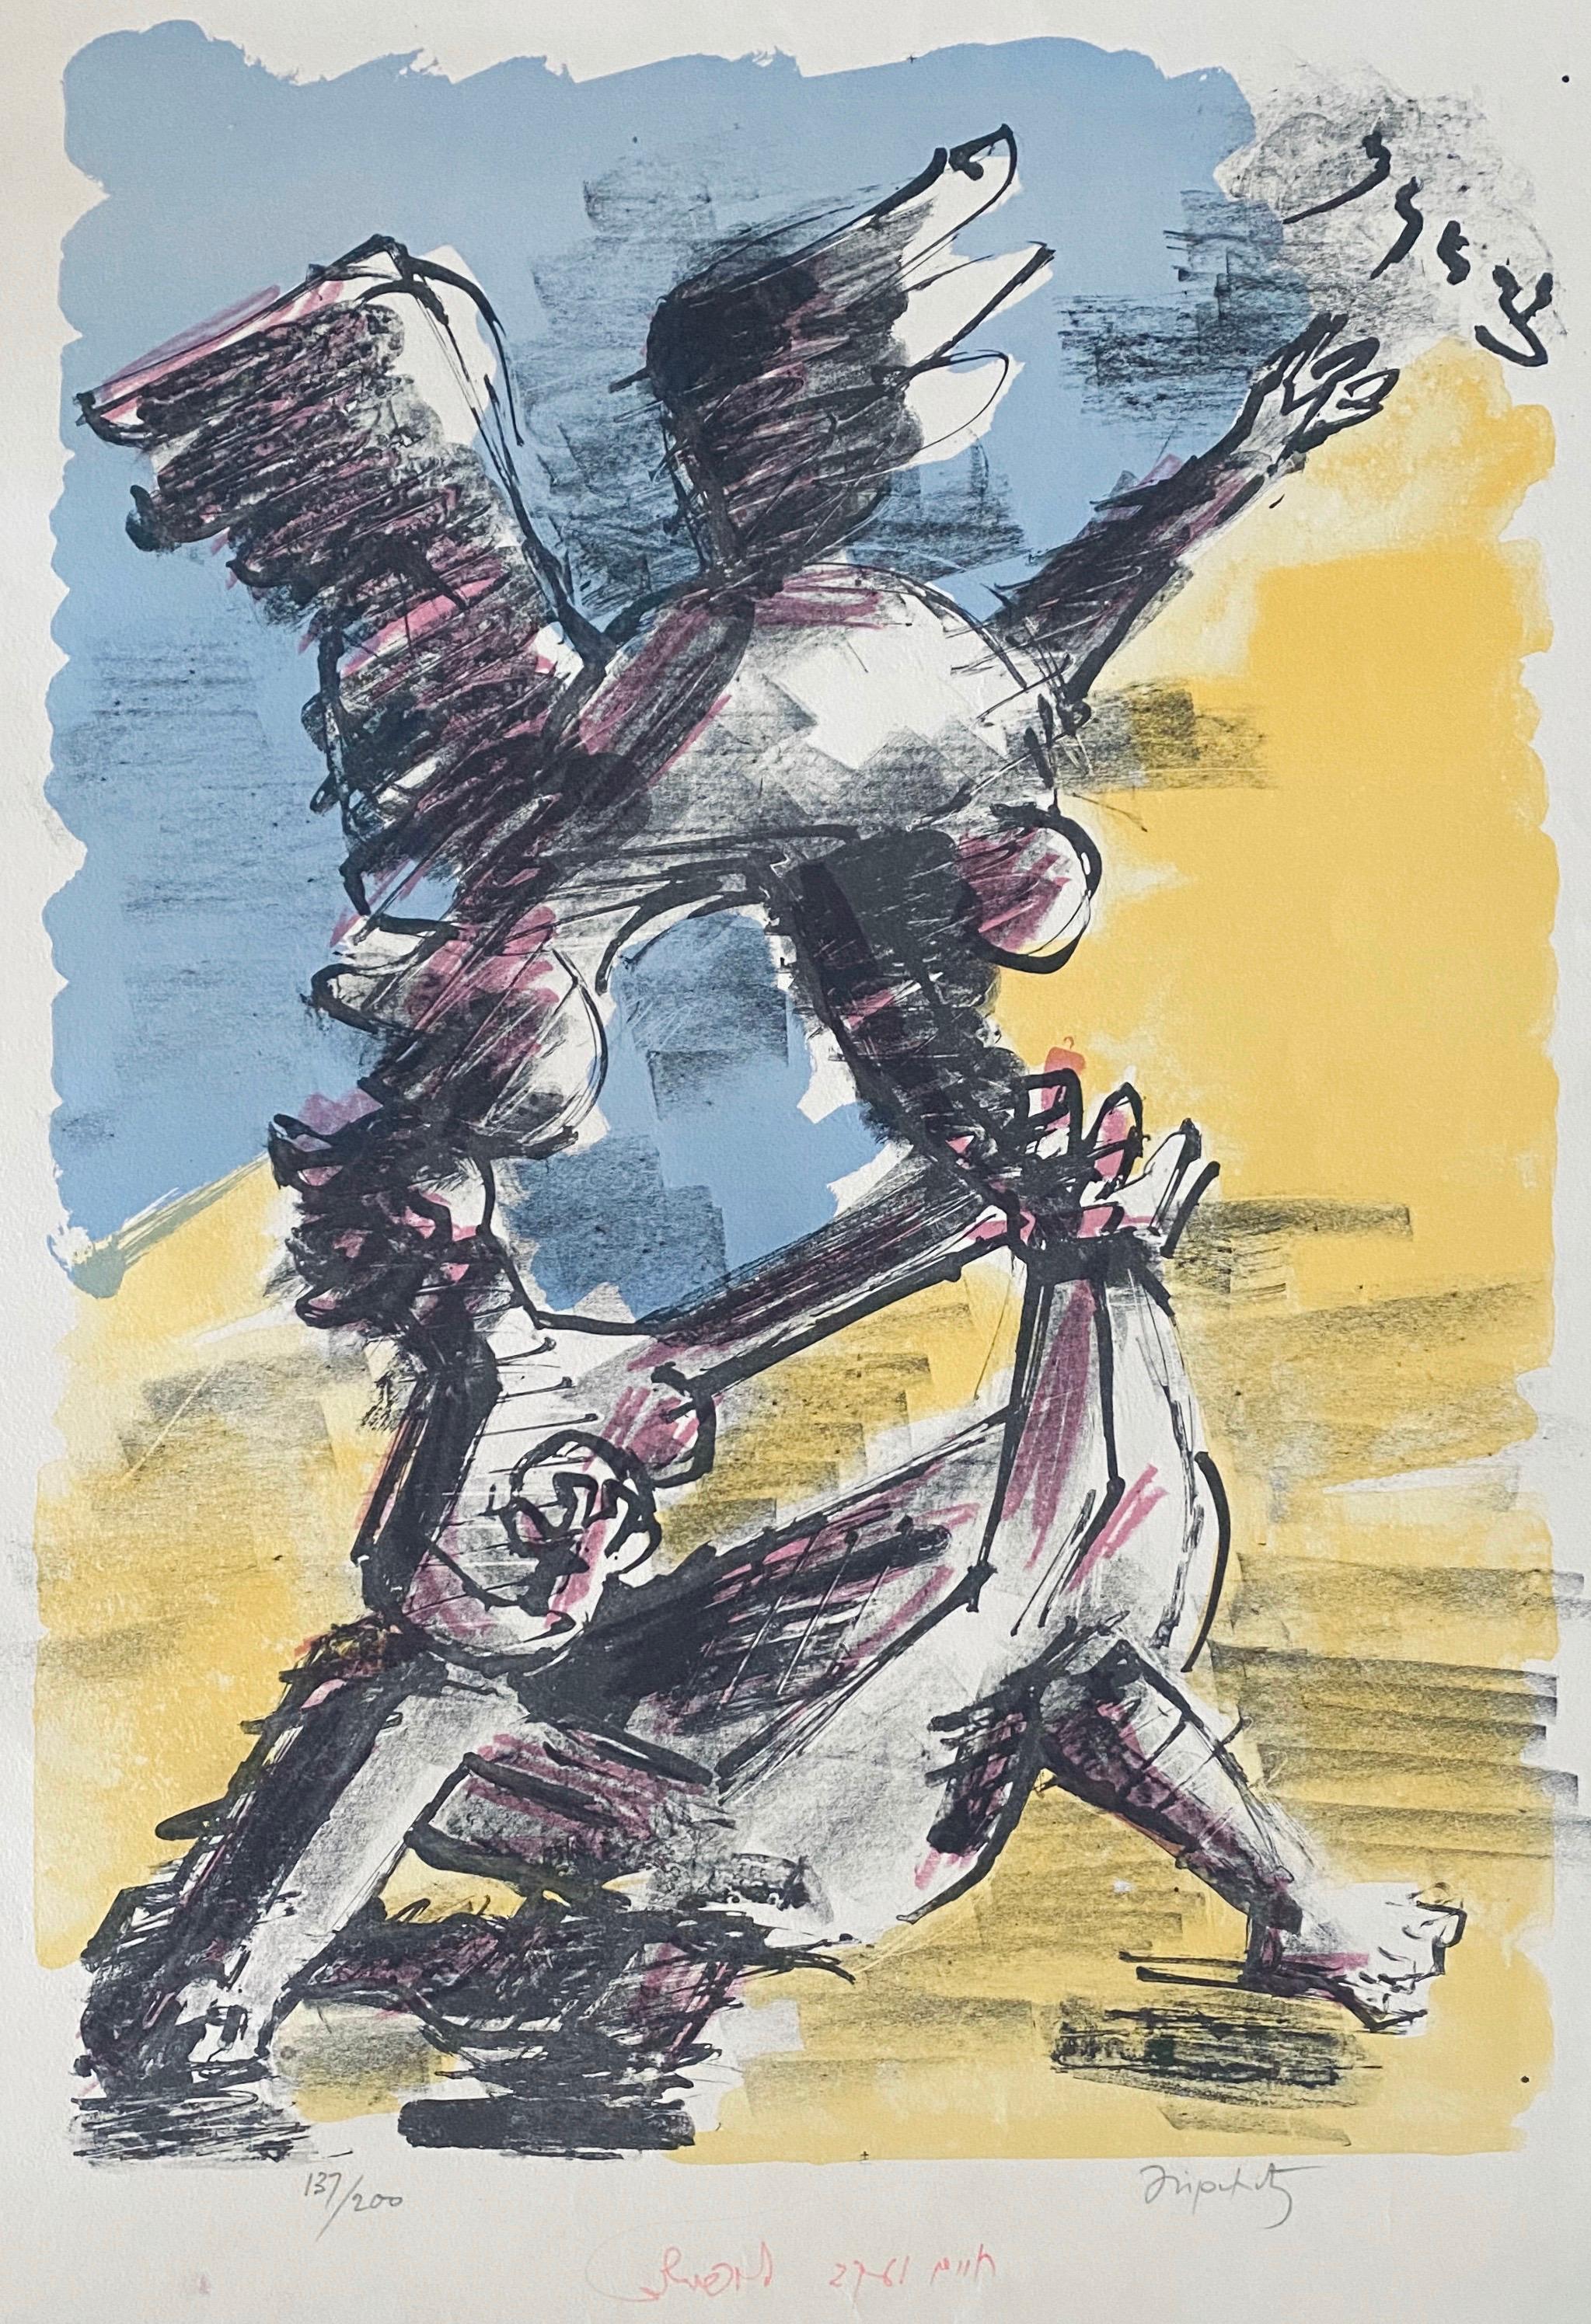  Signé et numéroté à la main.
avec la calligraphie hébraïque "Zion".

Chaim Jacob Lipchitz, 1891-1973, est né en Lituanie et a grandi à Paris au début du XXe siècle, où il a été actif dans la communauté d'avant-garde de Pablo Picasso, Amedeo